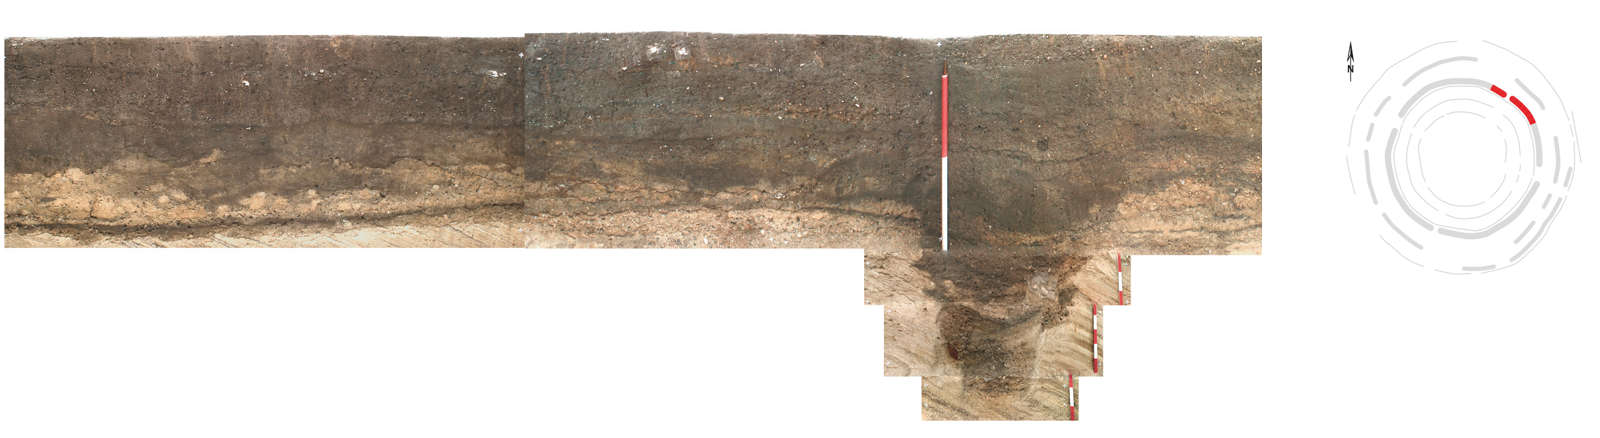 Profil Kreisgraben mit Schachtgrube Bef. 1101